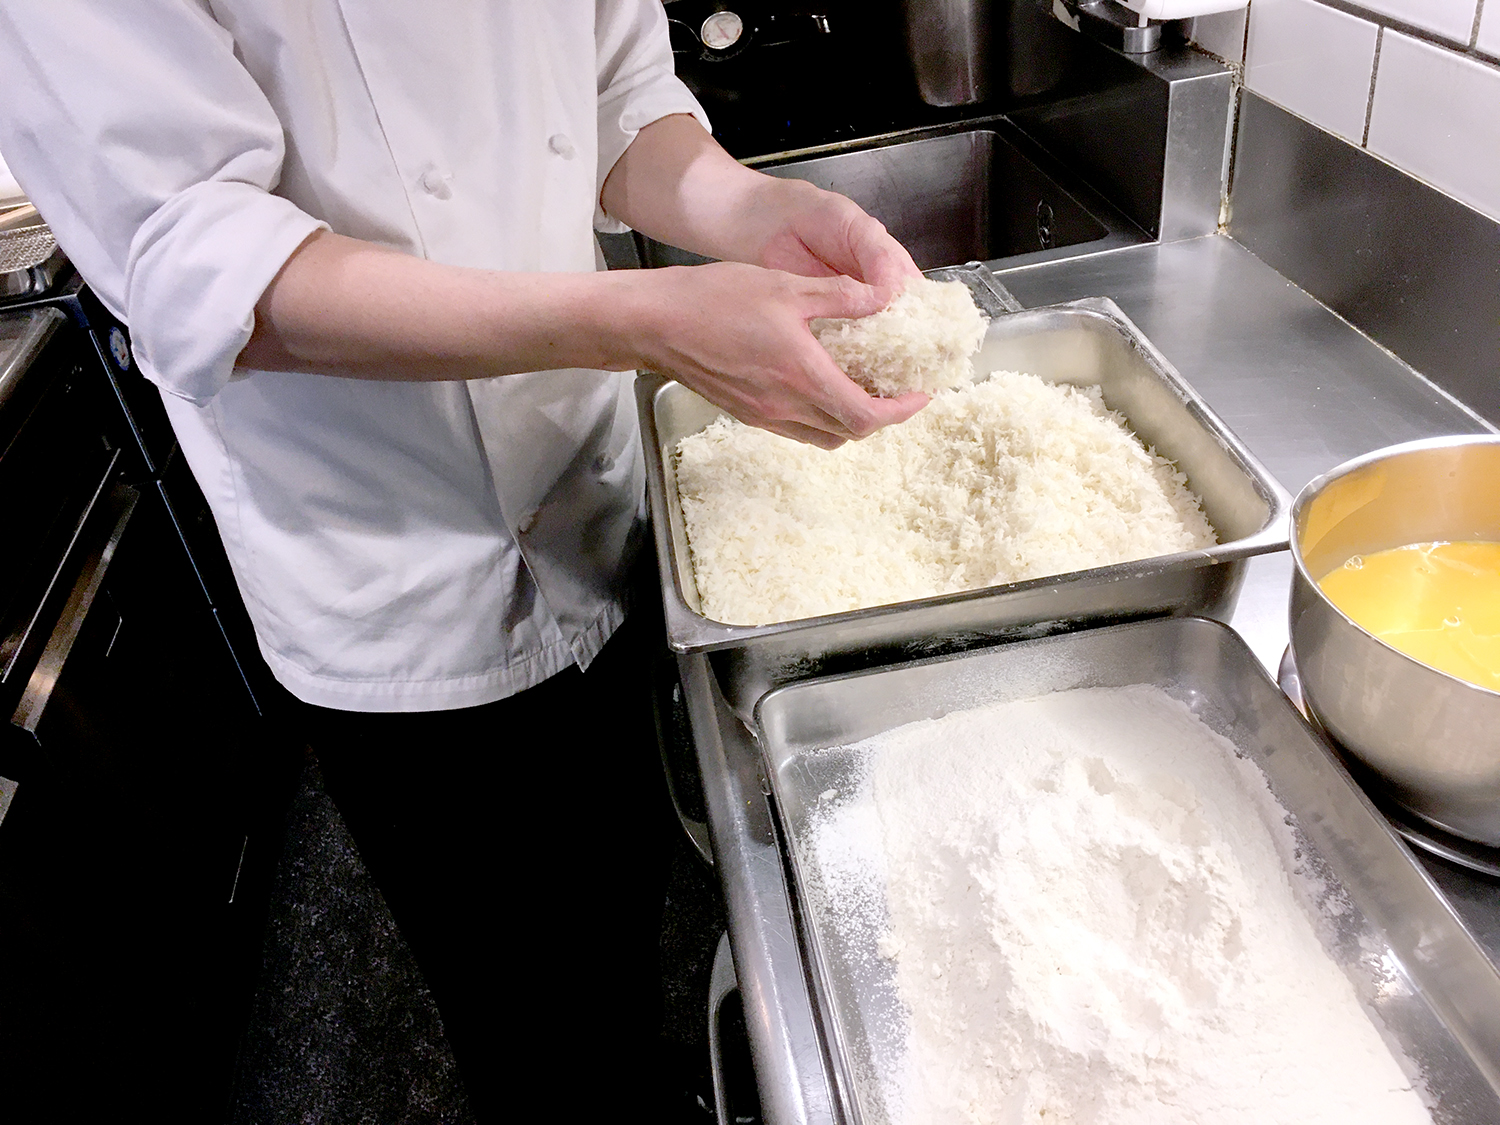 揚げ物用パン粉の専門店である中屋パン粉から厳選したパン粉を取り寄せている。風味があってふわっと感のある高級パン粉だ。